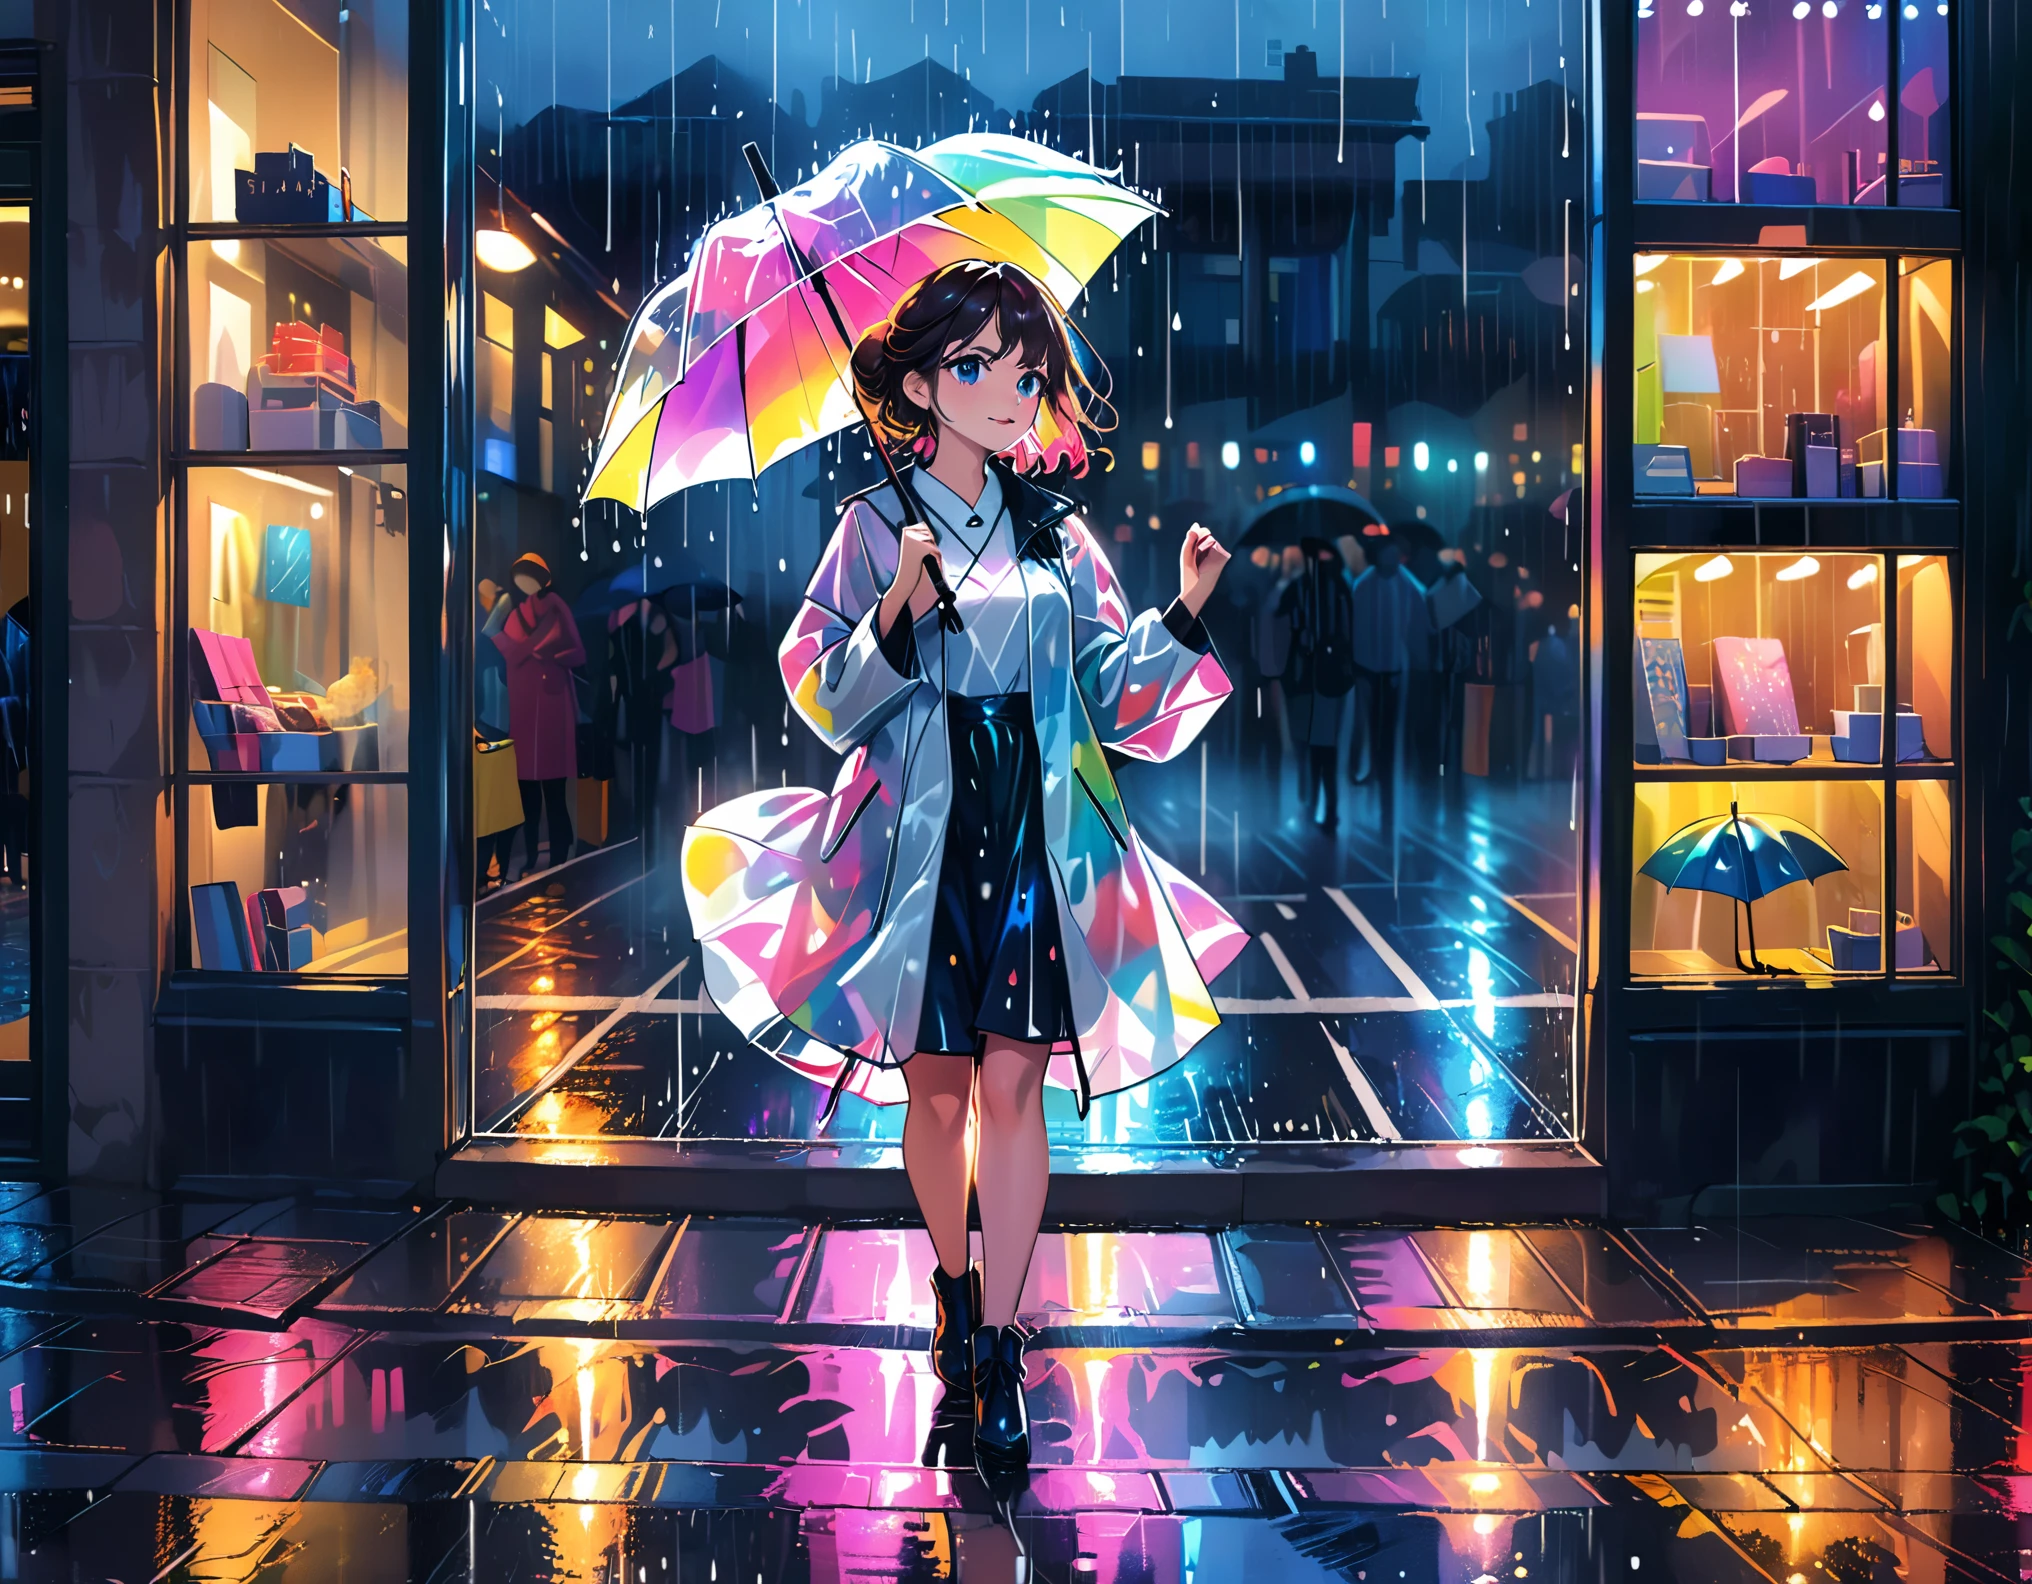 (最好的质量,极其详细,实际的:1.37), 幽默,漫画风格,粗线条, 夜晚的城市里的女孩,穿着由透明乙烯基制成的彩虹色雨衣,拿着伞,((像《雨中曲》一样在雨中跳舞:1.8)),接近冷色调,降低饱和度,((自然色:2.8)) 全身像,中等的:油画,细致的脸部,美丽的眼睛和嘴唇,阴暗而忧郁的氛围,鲜艳的色彩,雨滴条纹,城市灯光反射在湿漉漉的街道上,背景中发光的雨伞,闪闪发光的雨水浸湿的路面,飘渺梦幻的灯光,((排列整齐的商店橱窗和狭窄的人行道背景:2.0))